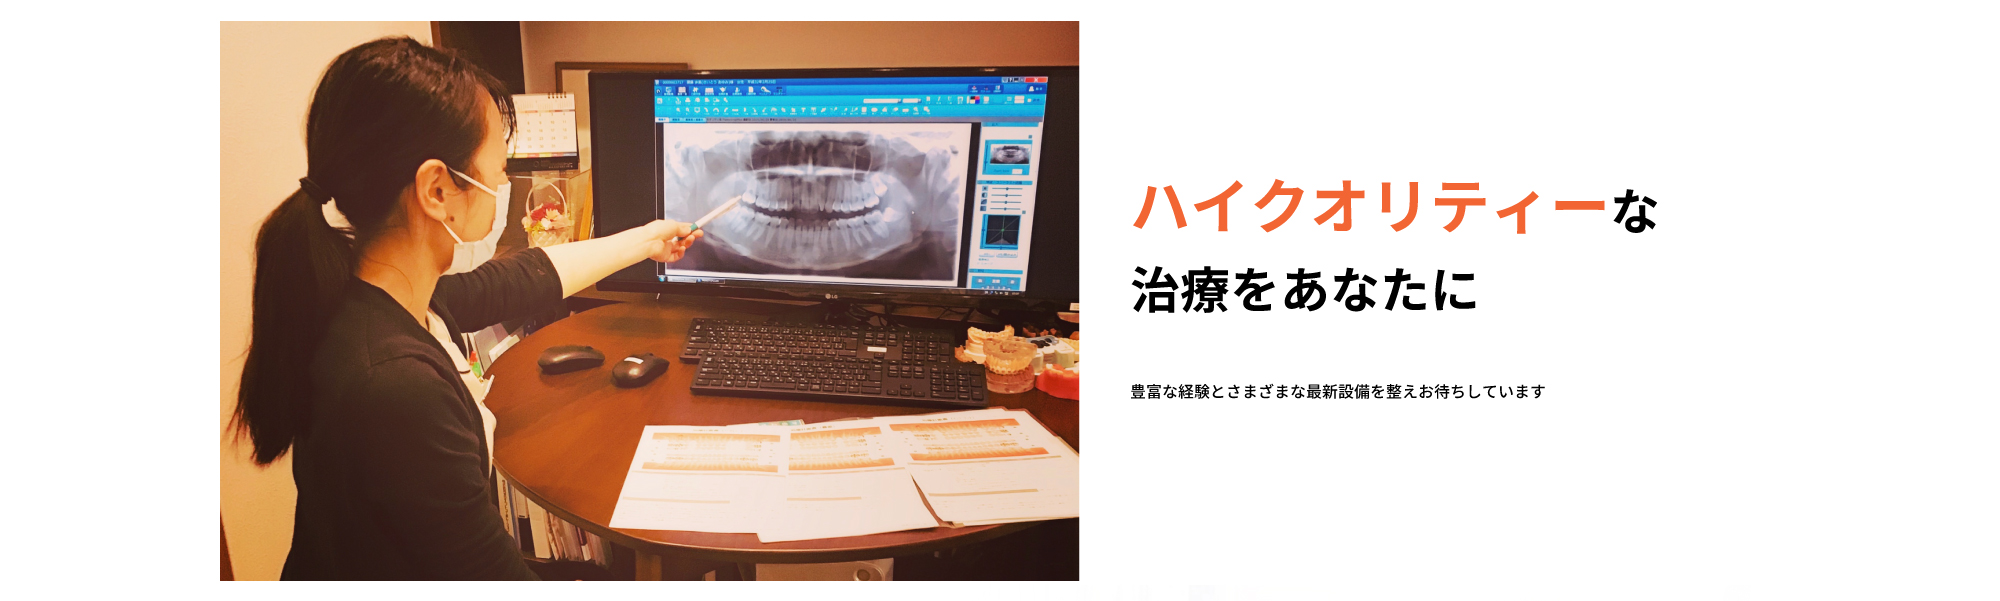 綾瀬で専門医レベルの歯科医療をご提供